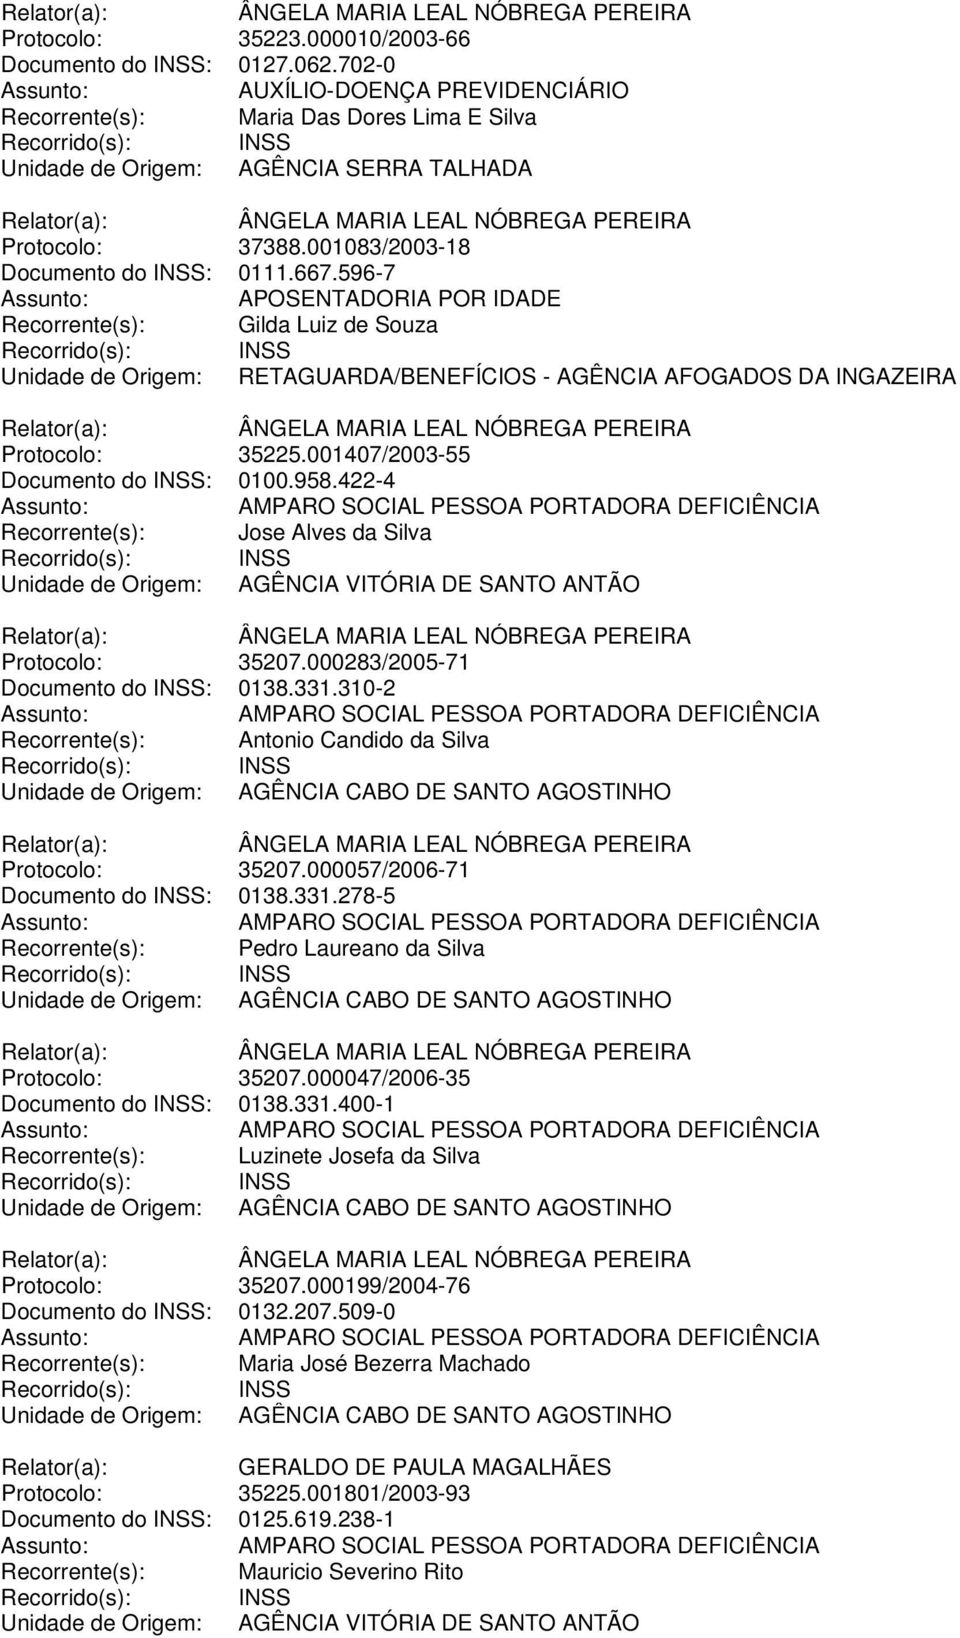 422-4 Recorrente(s): Jose Alves da Silva Unidade de Origem: AGÊNCIA VITÓRIA DE SANTO ANTÃO Protocolo: 35207.000283/2005-71 Documento do INSS: 0138.331.